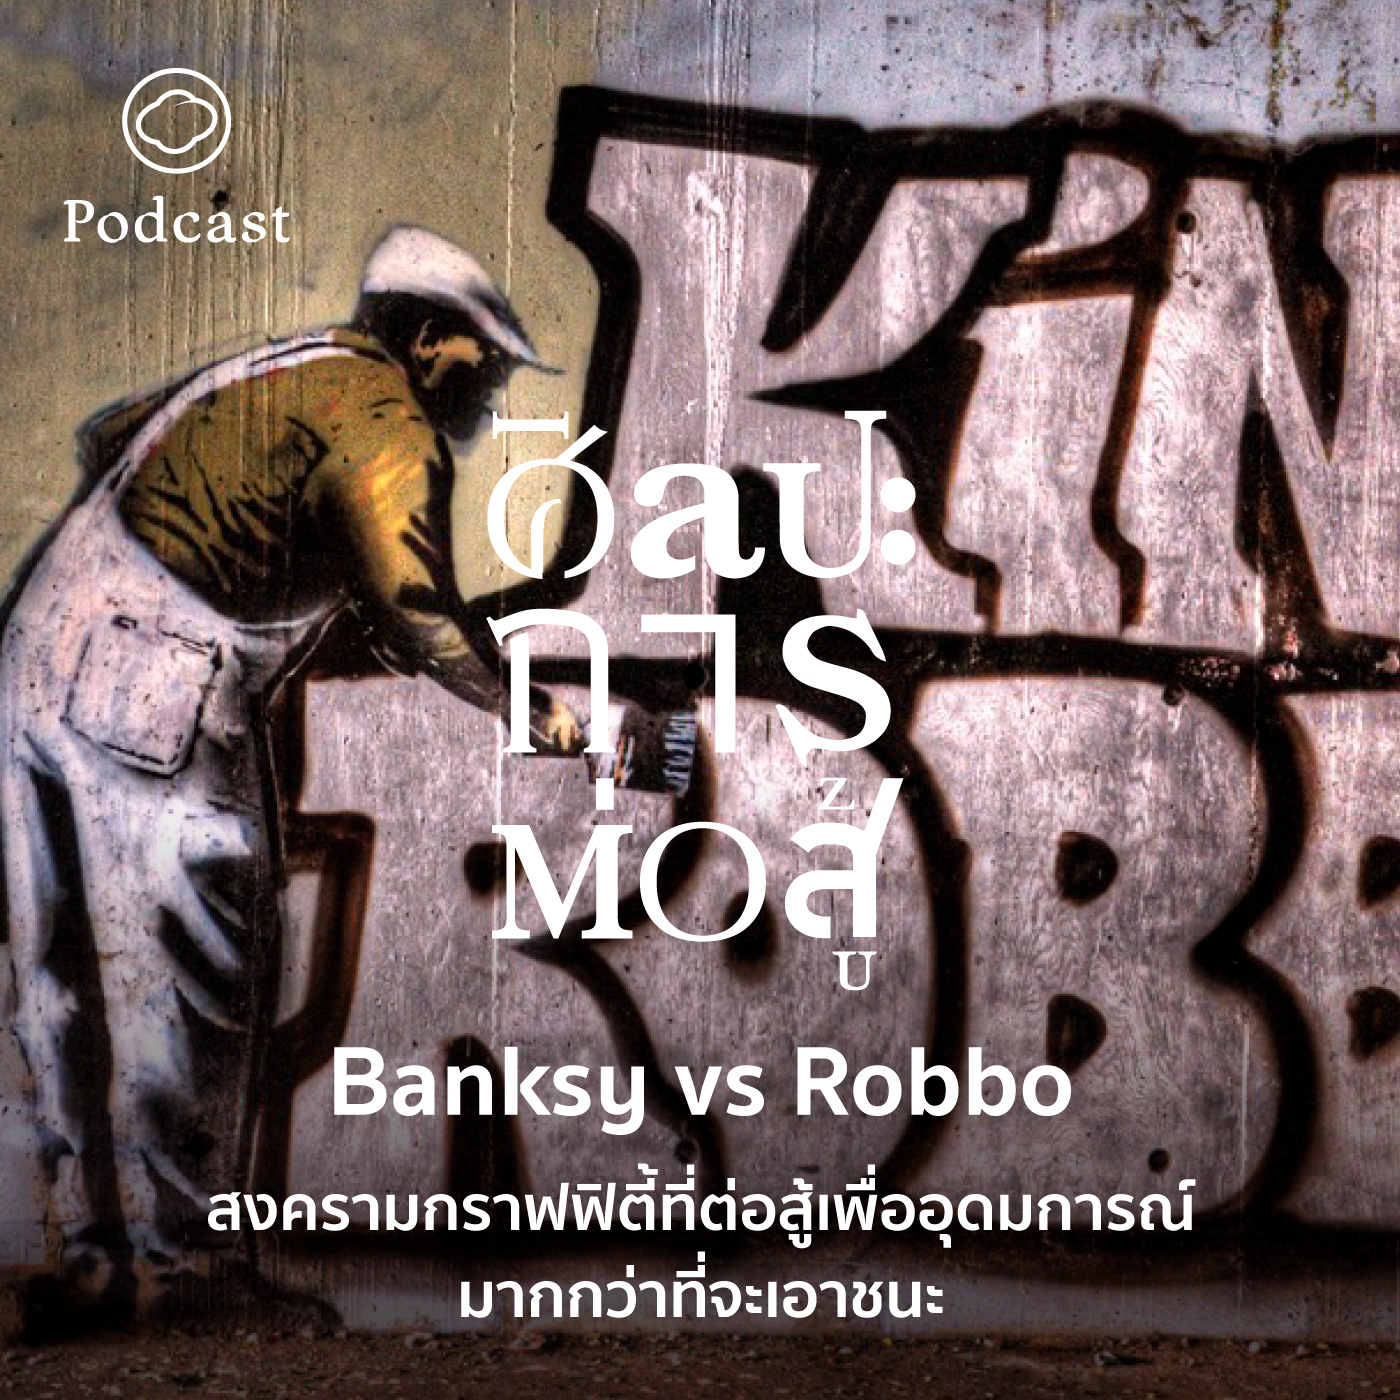 EP. 47 Banksy vs Robbo สงครามกราฟฟิตี้ที่ต่อสู้เพื่ออุดมการณ์มากกว่าที่จะเอาชนะ - The Cloud Podcast